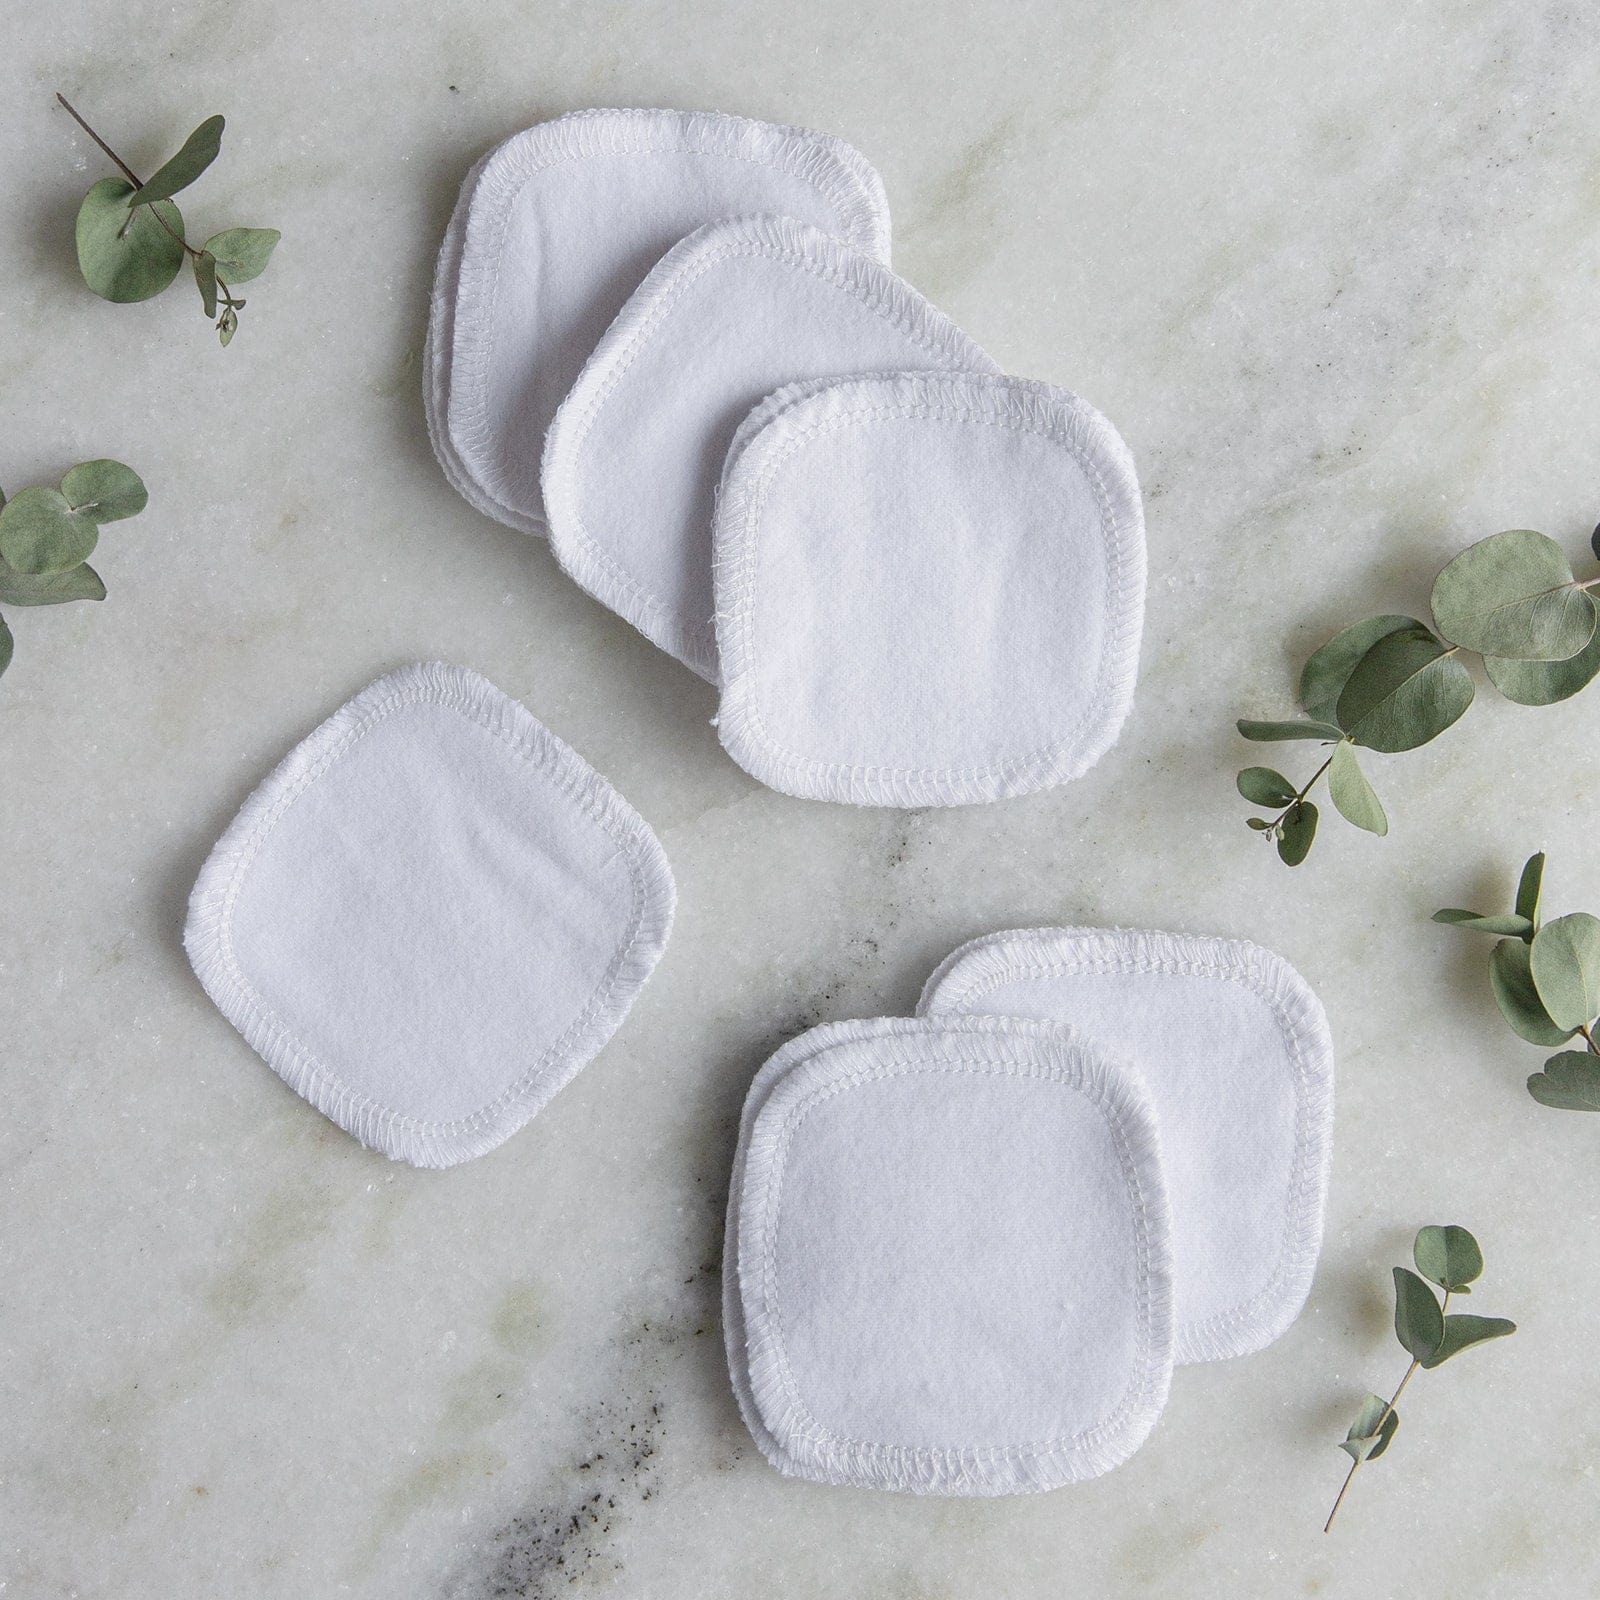 Reusable Facial Rounds - Reusable Cotton Pads, 100% Organic Cotton, Multiple Colors, 20 Pack